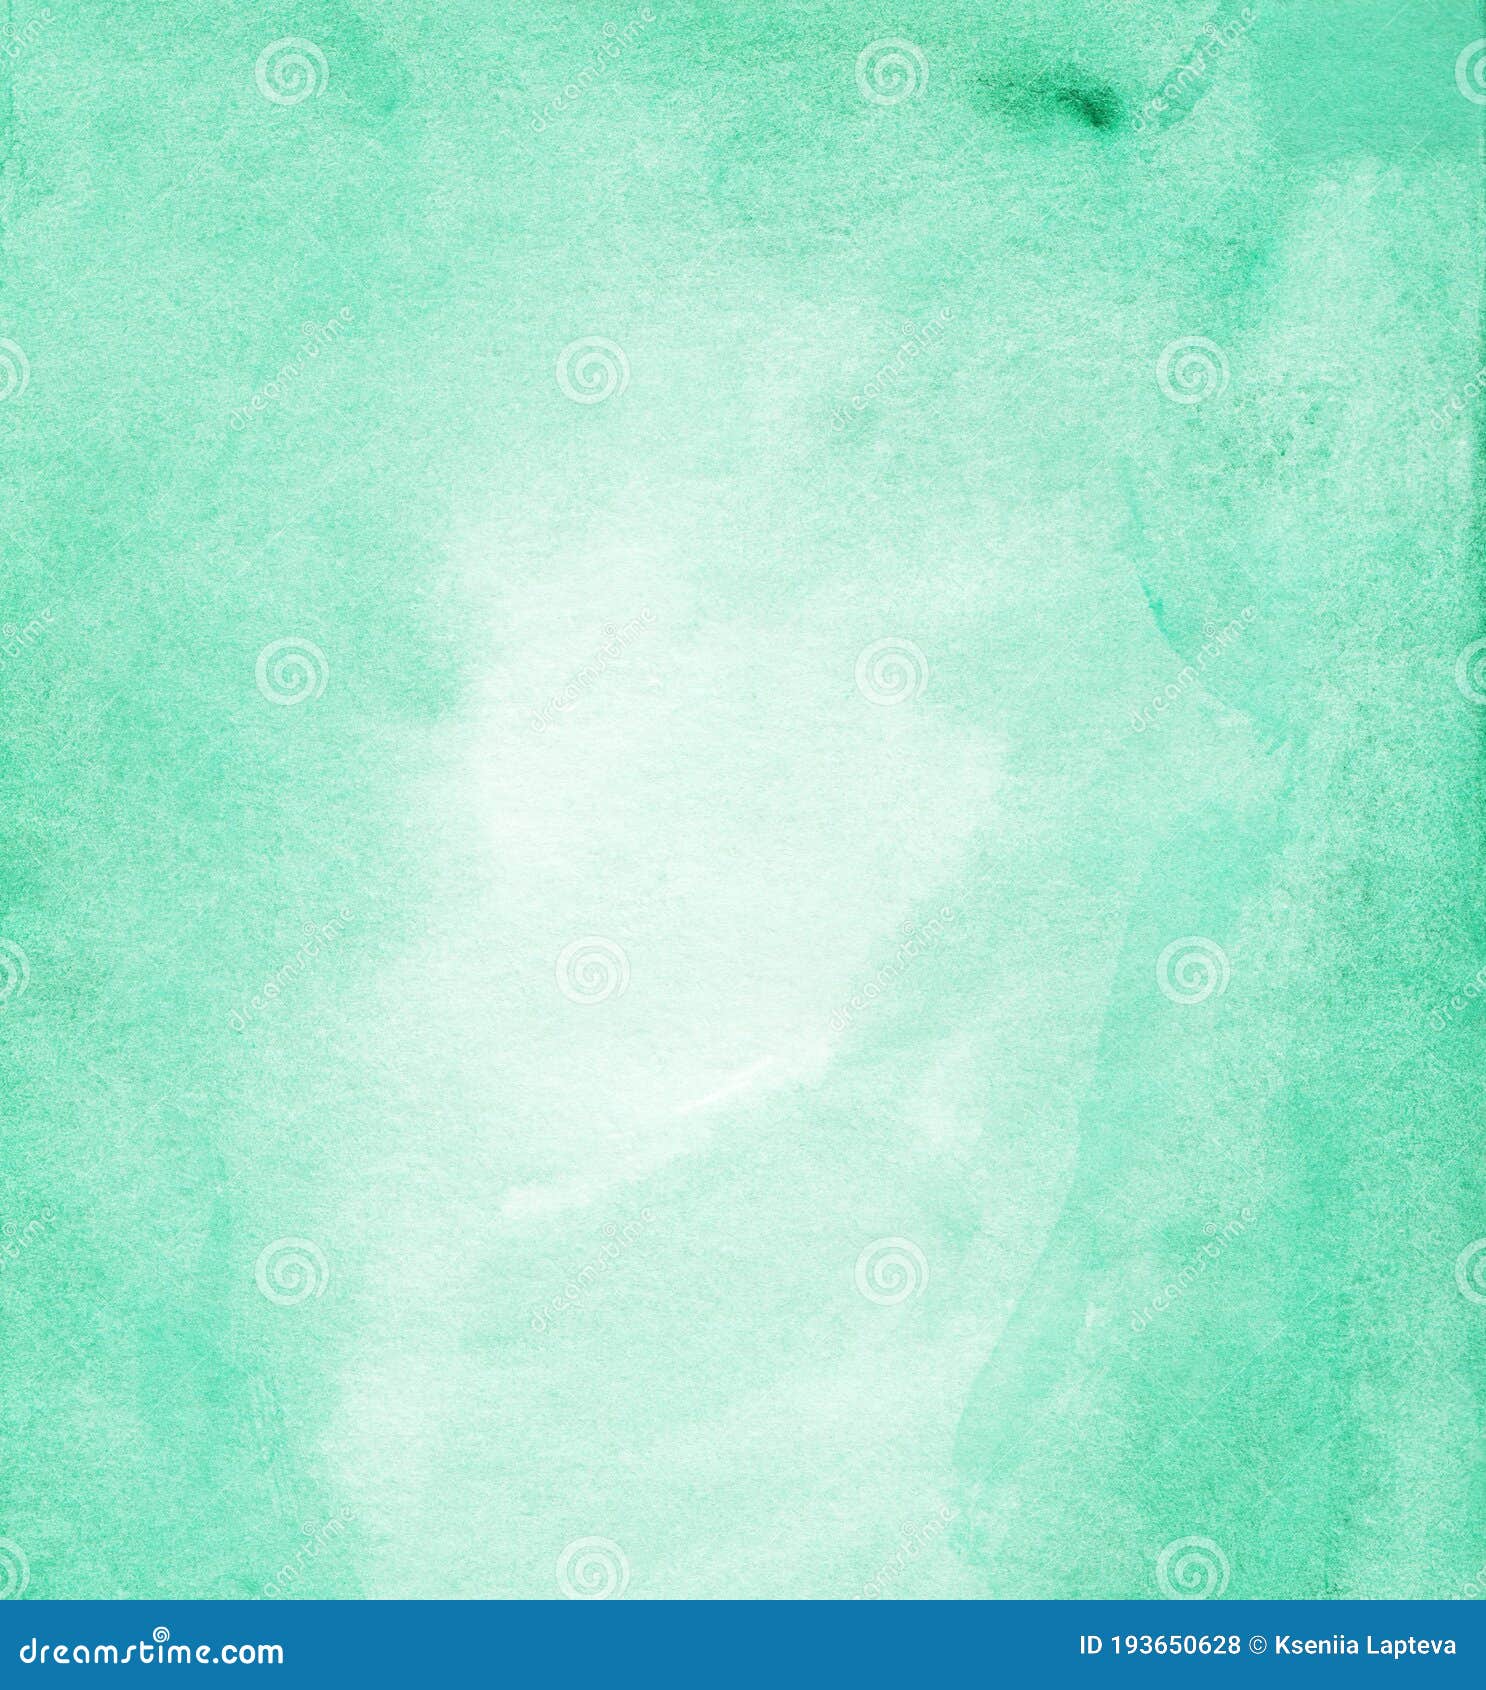 Nét vẽ delicate và tươi mát, Aquarelle Mint đem lại cảm giác dịu nhẹ như một lá bạc thảo giữa mùa hè oi nóng. Bức tranh này sẽ làm bạn thấy như đang ngắm bộ phim nhẹ nhàng tràn đầy niềm vui.